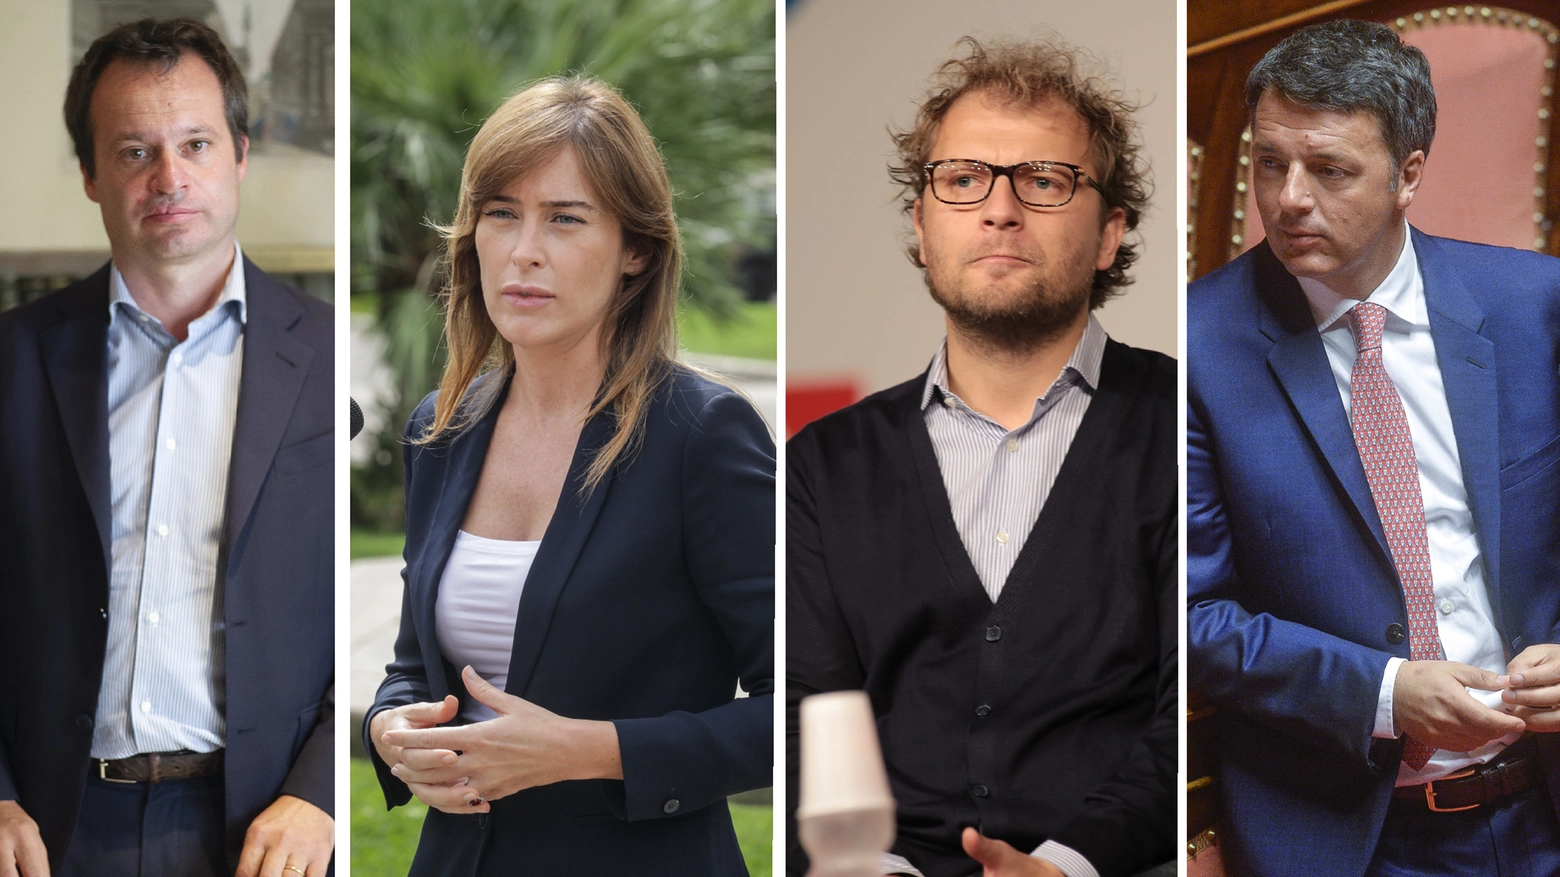 Marco Carrai, Maria Elena Boschi, Luca Lotti, Matteo Renzi: il cosiddetto 'Giglio magico'